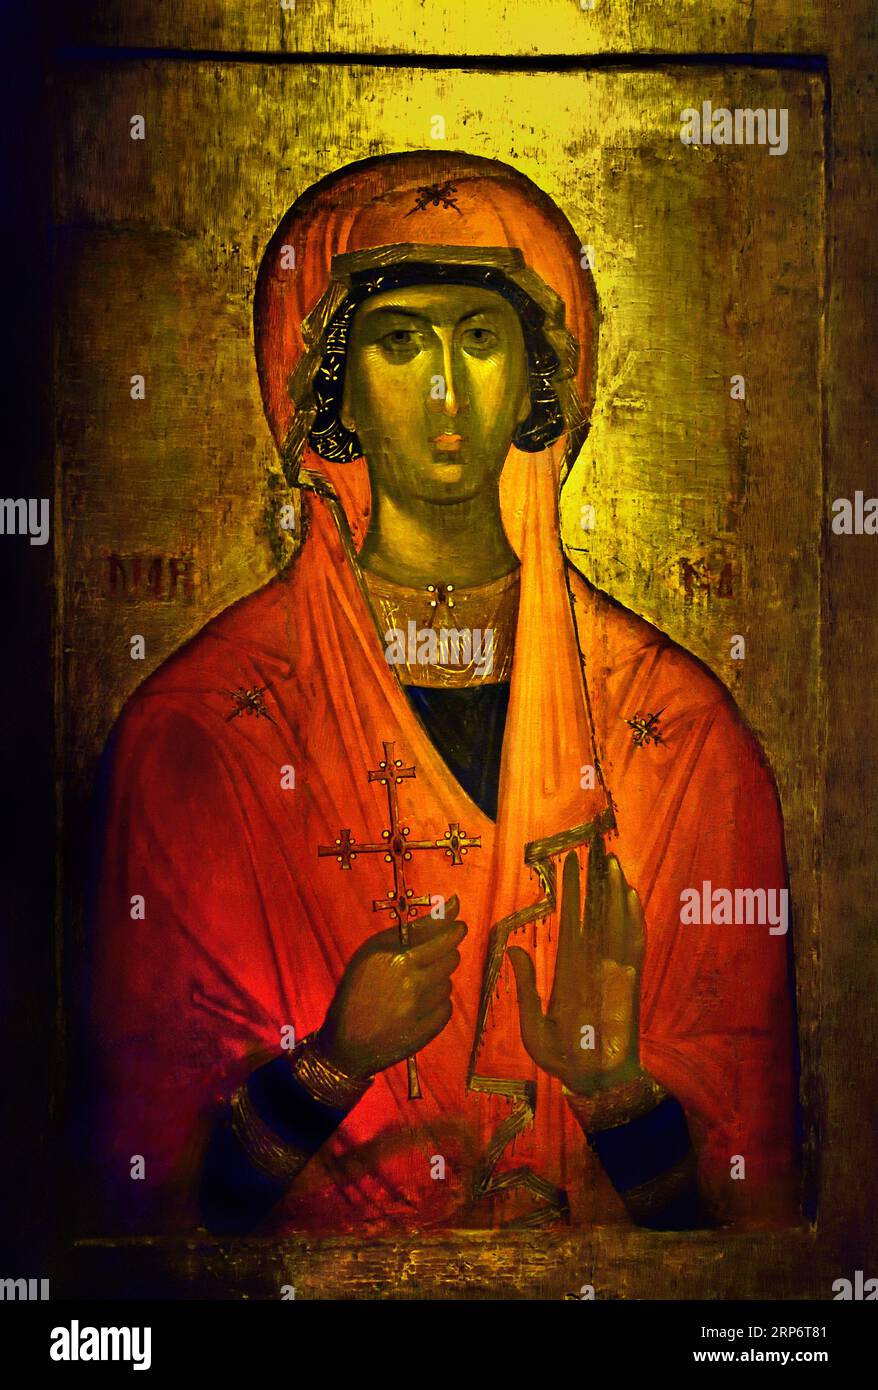 Saint Marina Icon, geschaffen auf Kreta, Künstler aus dem 14. Bis 15. Jahrhundert, der eng mit Werkstätten verbunden ist, Konstantinopel. Athen Griechenland Byzantinisches Museum Orthodoxe Kirche Griechisch ( Icon ) Stockfoto